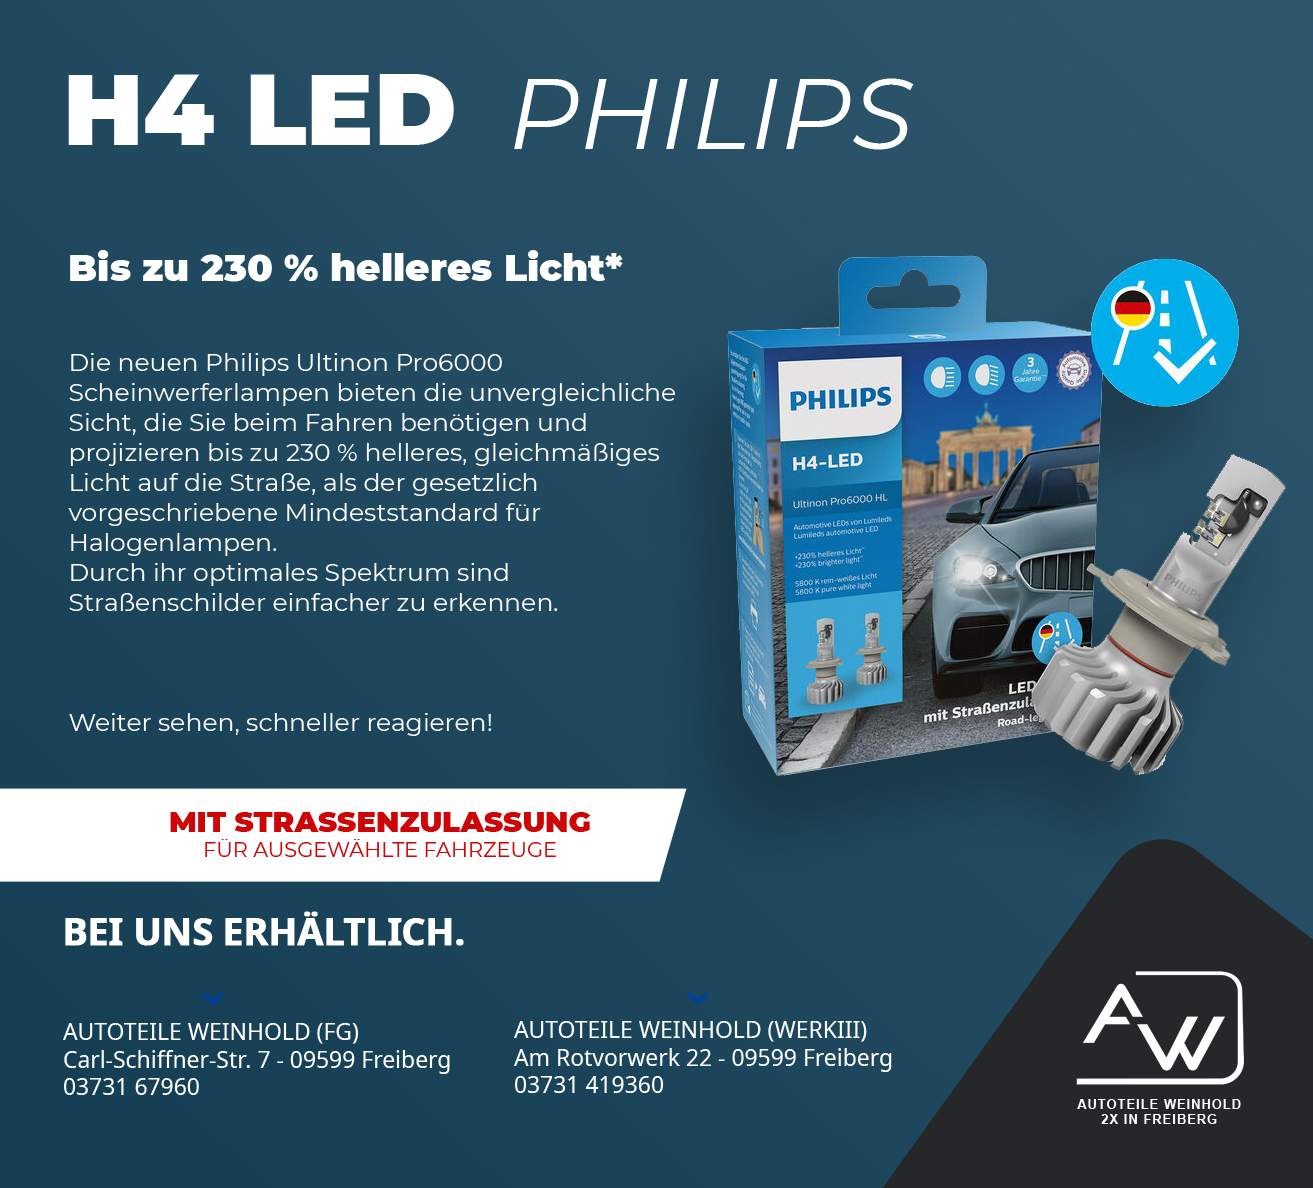 H4 LED von Philips